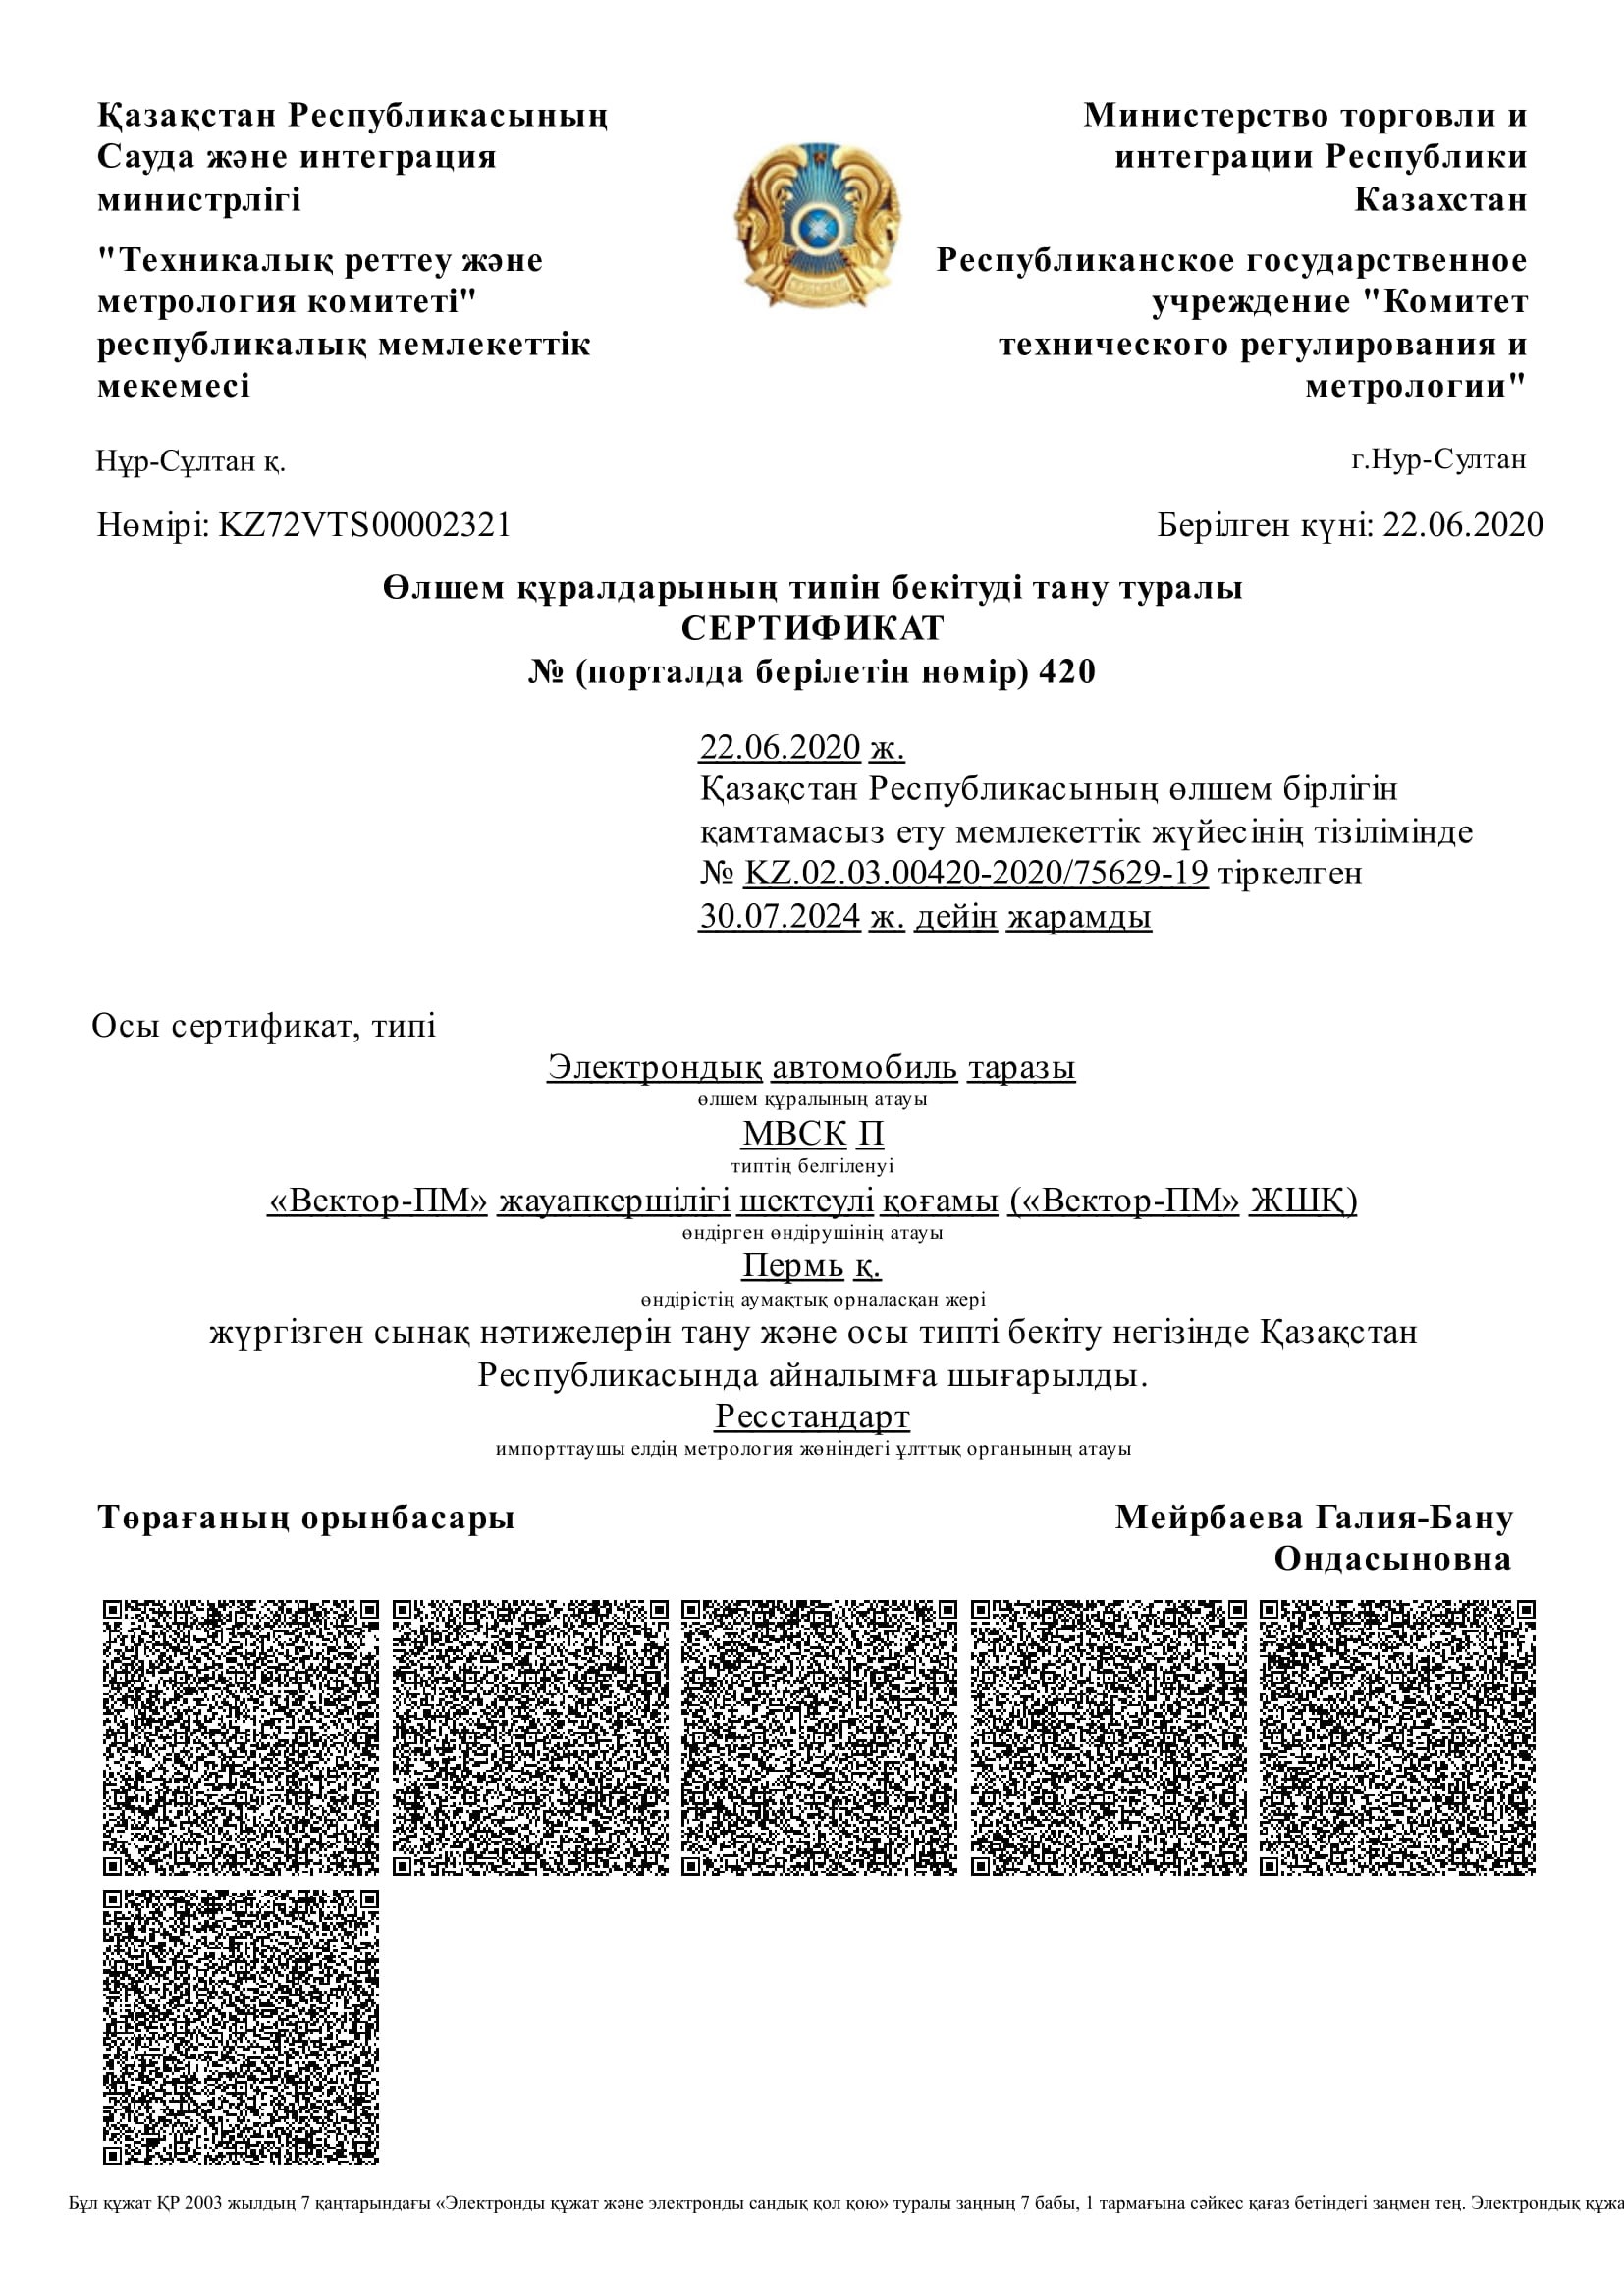 Сертификат в казахстан МВСК П (подкладные и поосевые на казахском)